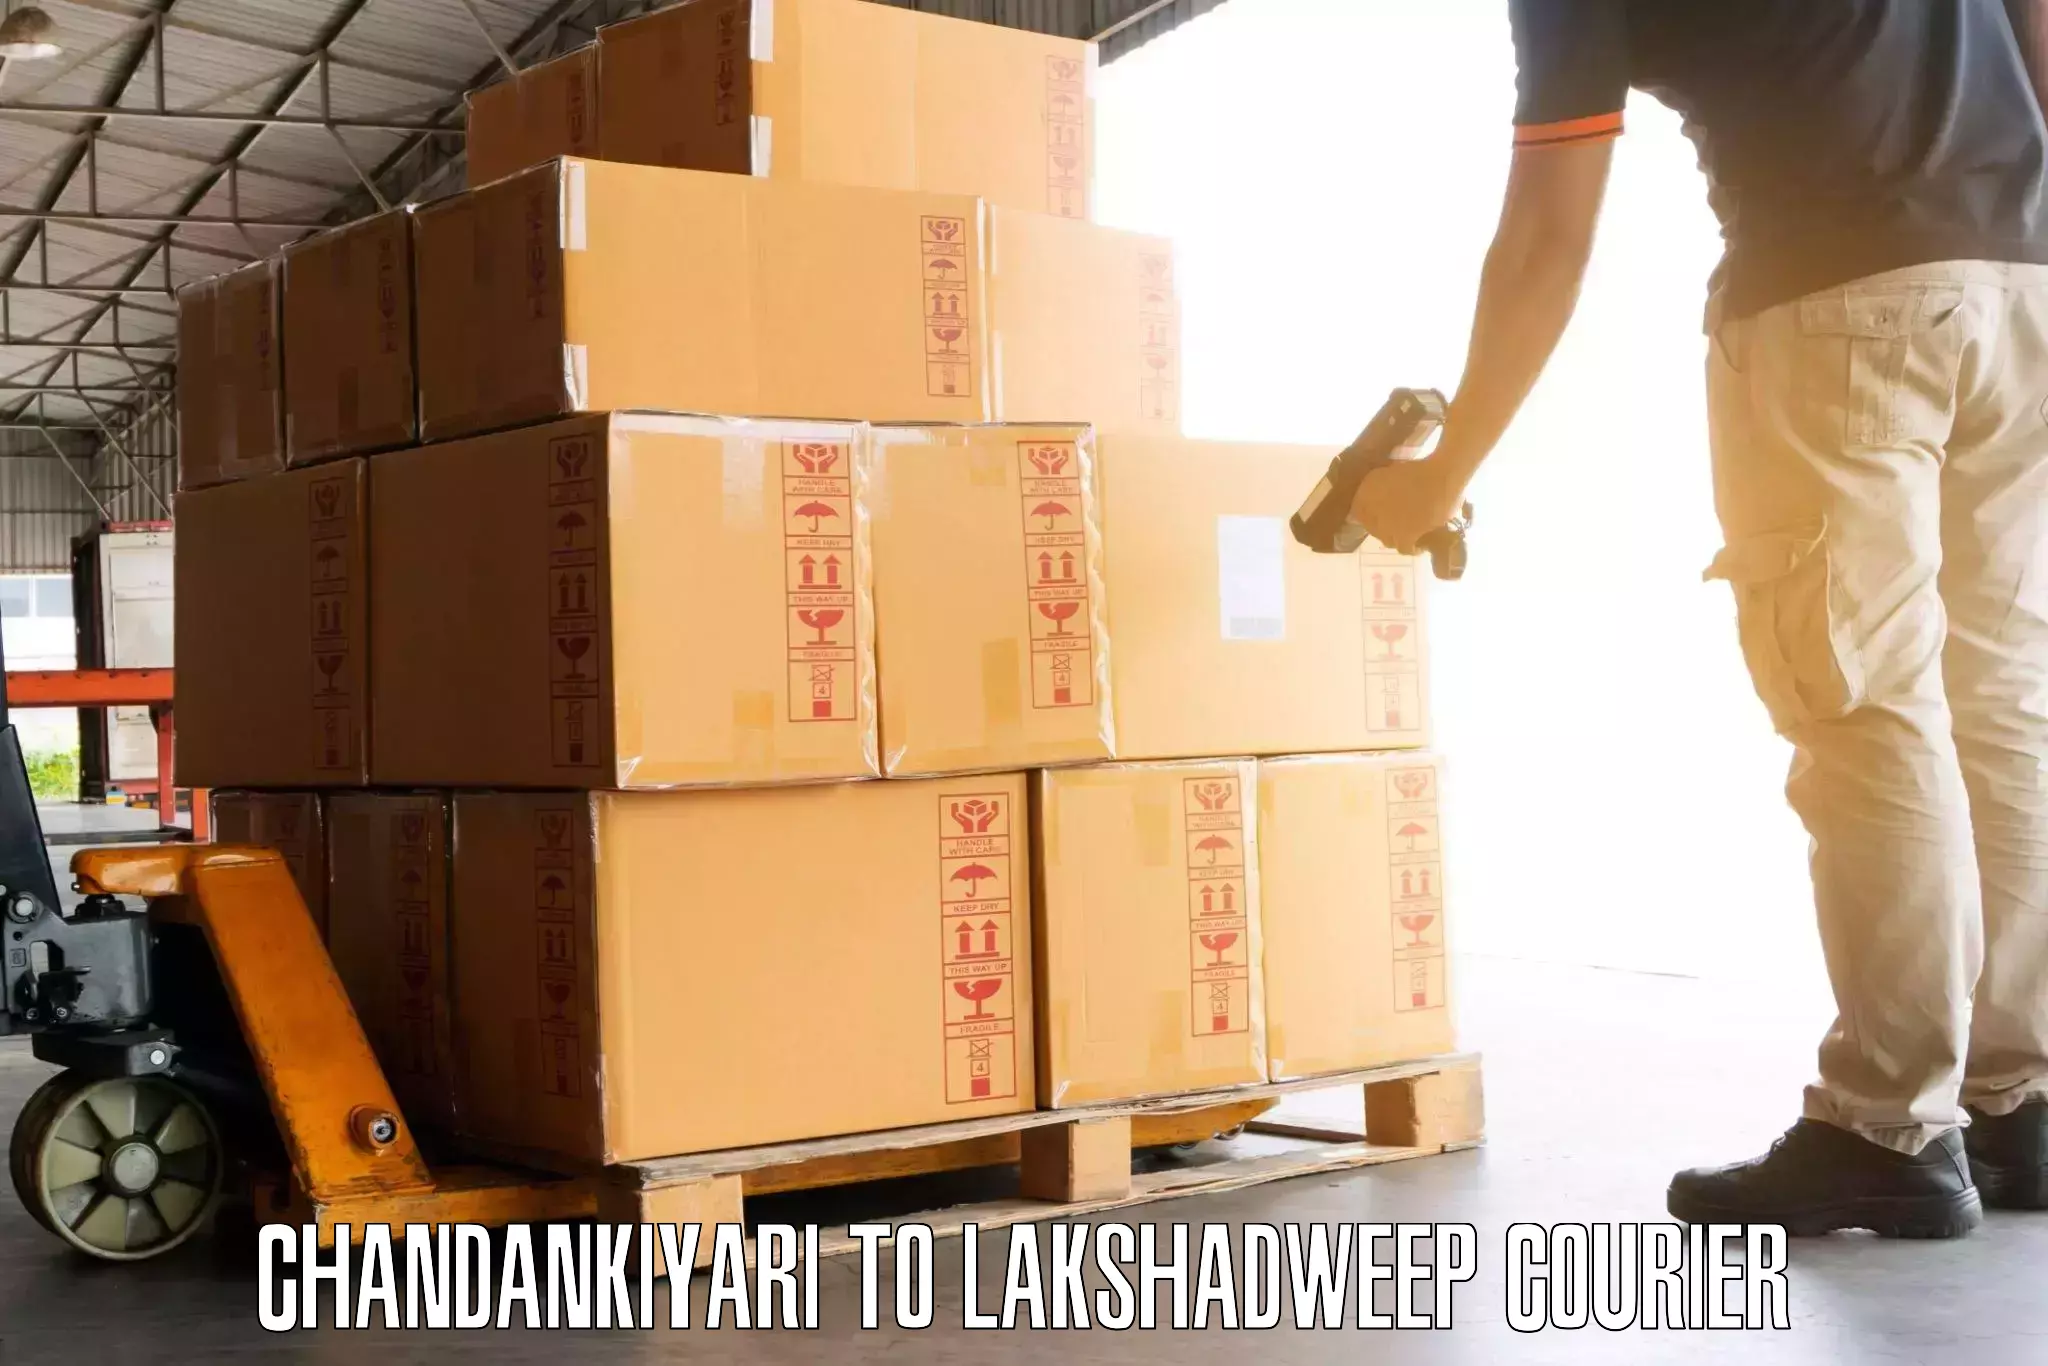 Business luggage transport Chandankiyari to Lakshadweep